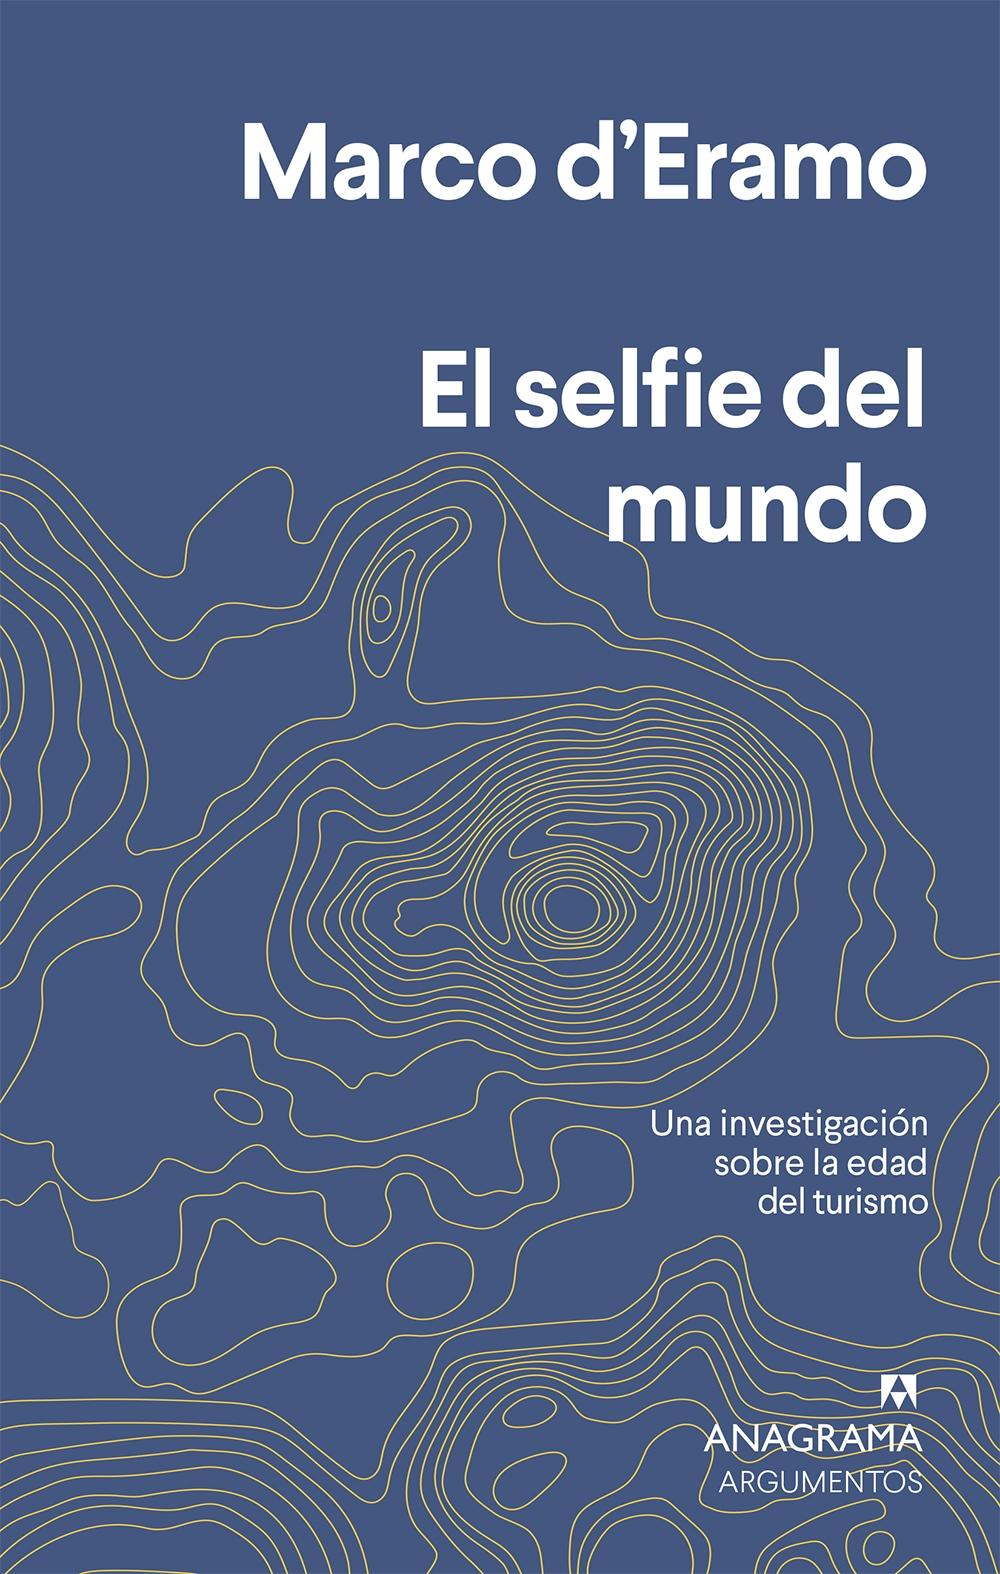 El selfie del mundo "Una investigación sobre la era del turismo". 